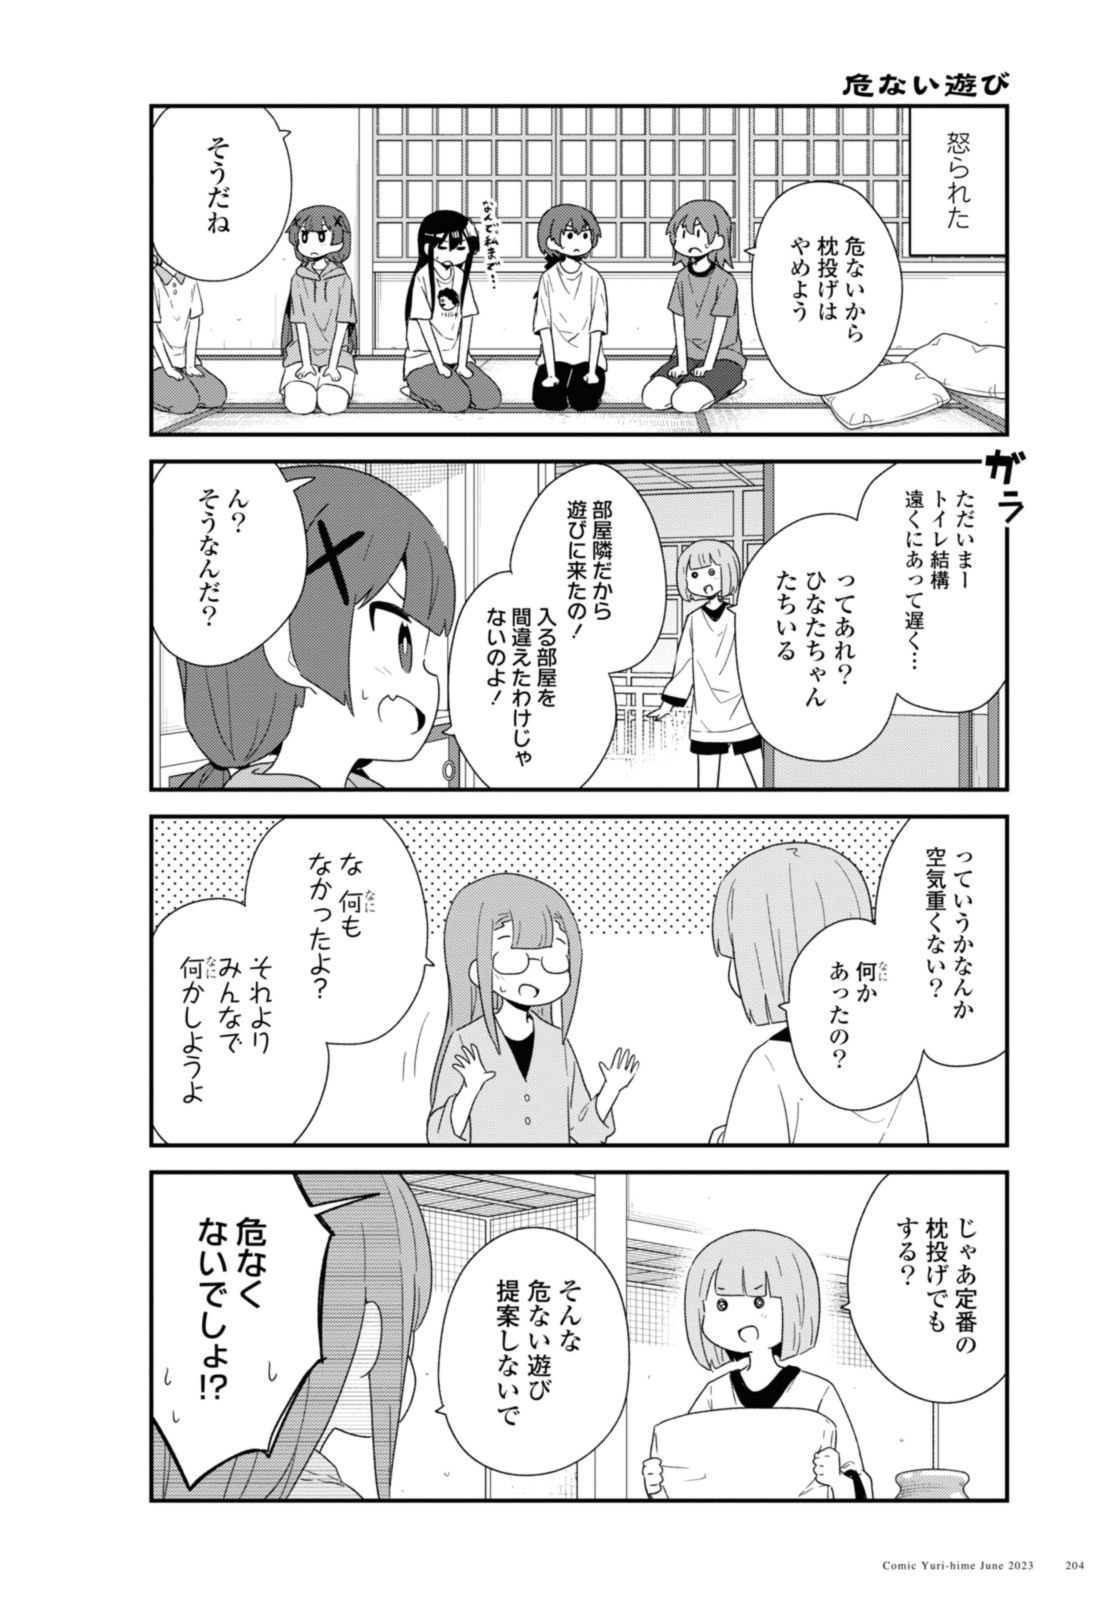 Watashi ni Tenshi ga Maiorita! - Chapter 106 - Page 4